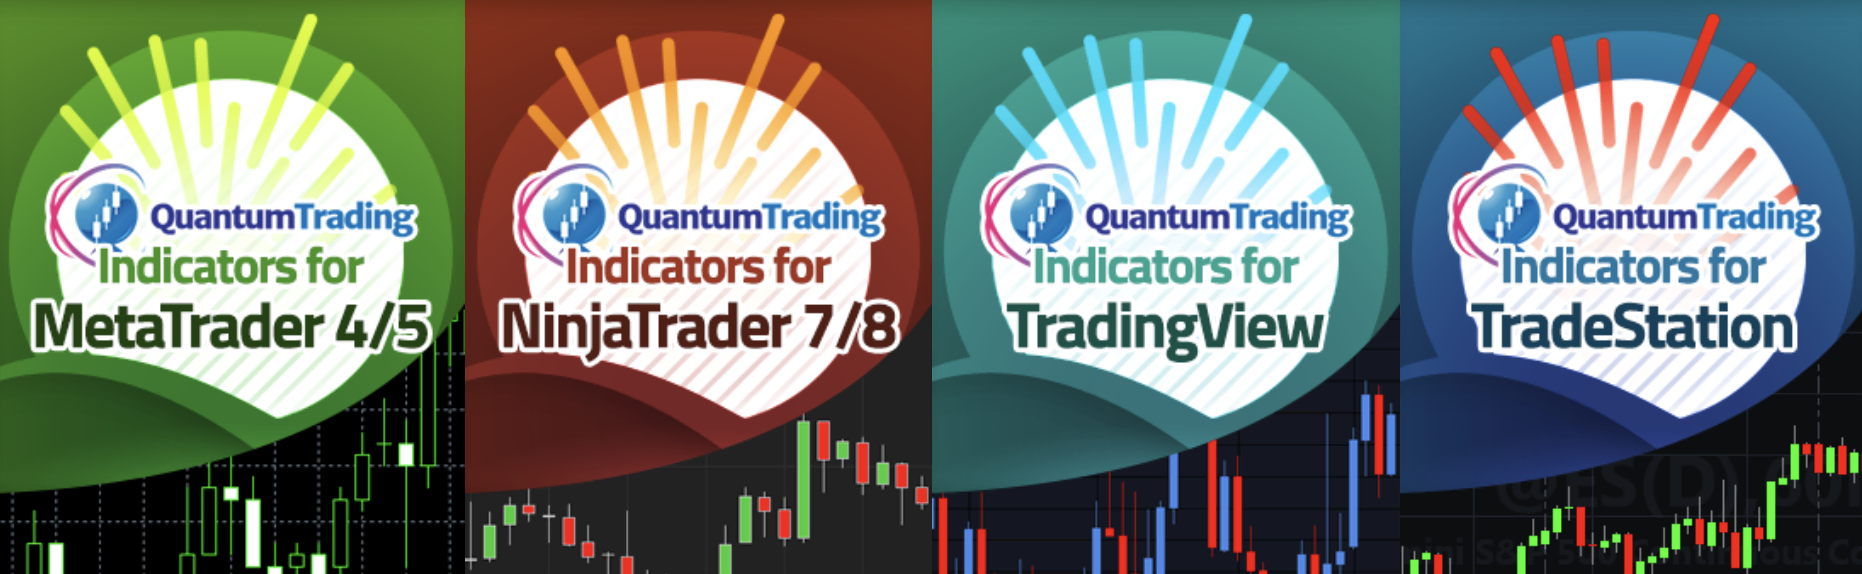 Indicadores disponíveis no Quantum Trading